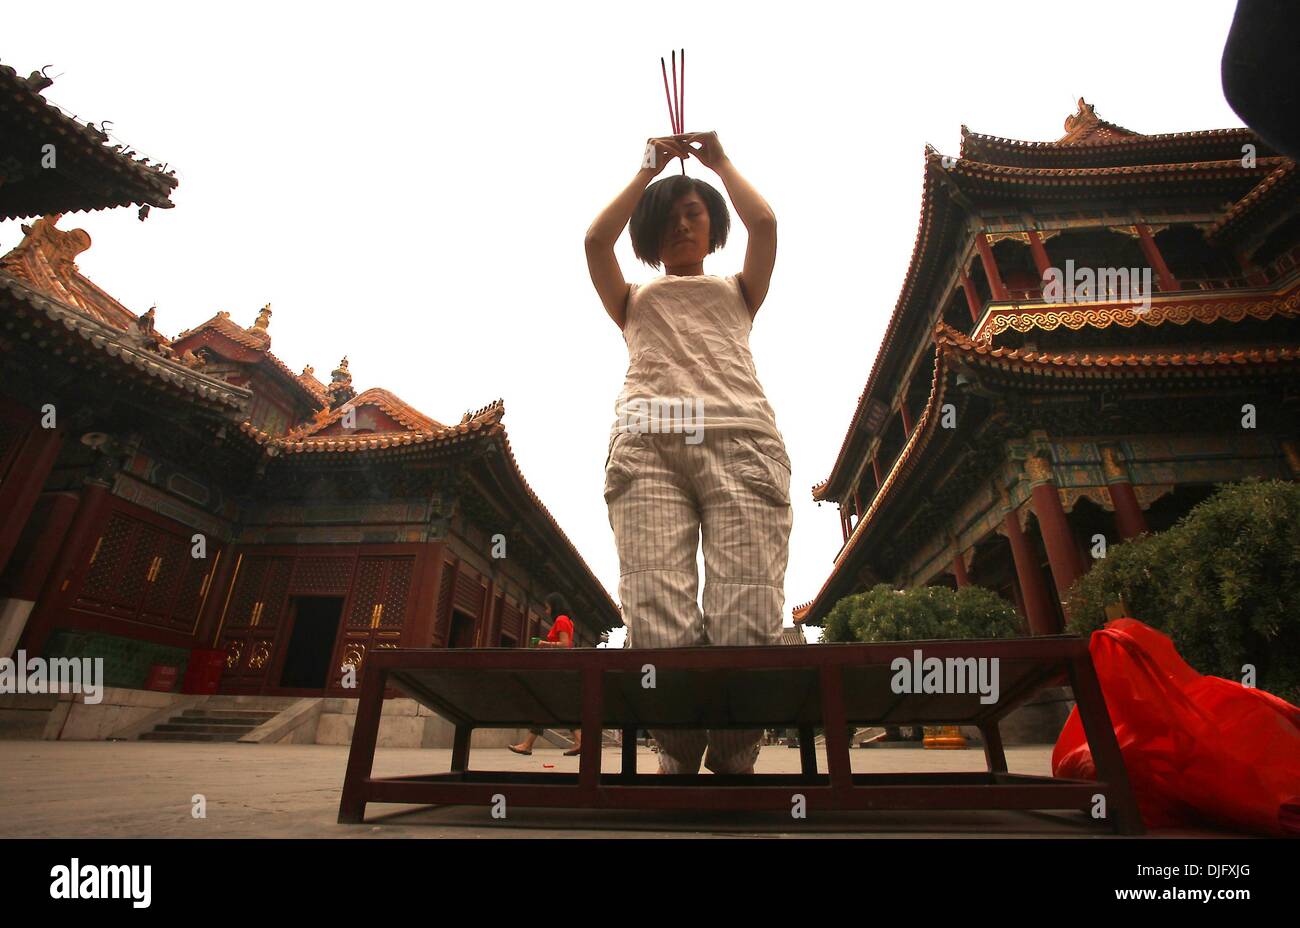 Pechino, Cina. 7 Luglio, 2010. Visita cinese e pregare nel YongHeGong il Tempio dei Lama, che è uno dei più grandi Buddista Tibetana monasteri in tutto il mondo, a Pechino il 7 luglio 2010. Il Tibetano artisti, intellettuali e ora gli ambientalisti in Cina si trovano di fronte a una crescente minaccia di arresto e detenzione prolungata durante l anniversario del 2008 proteste contro Pechino la regola. Gli osservatori sostengono che la repressione delle persone normalmente lasciato fuori di segnali di politica della Cina di crescente preoccupazione per la recrudescenza di orgoglio in tibetano identità culturale. © Stephen rasoio/ZUMAPRESS.com/Alamy Live News Foto Stock